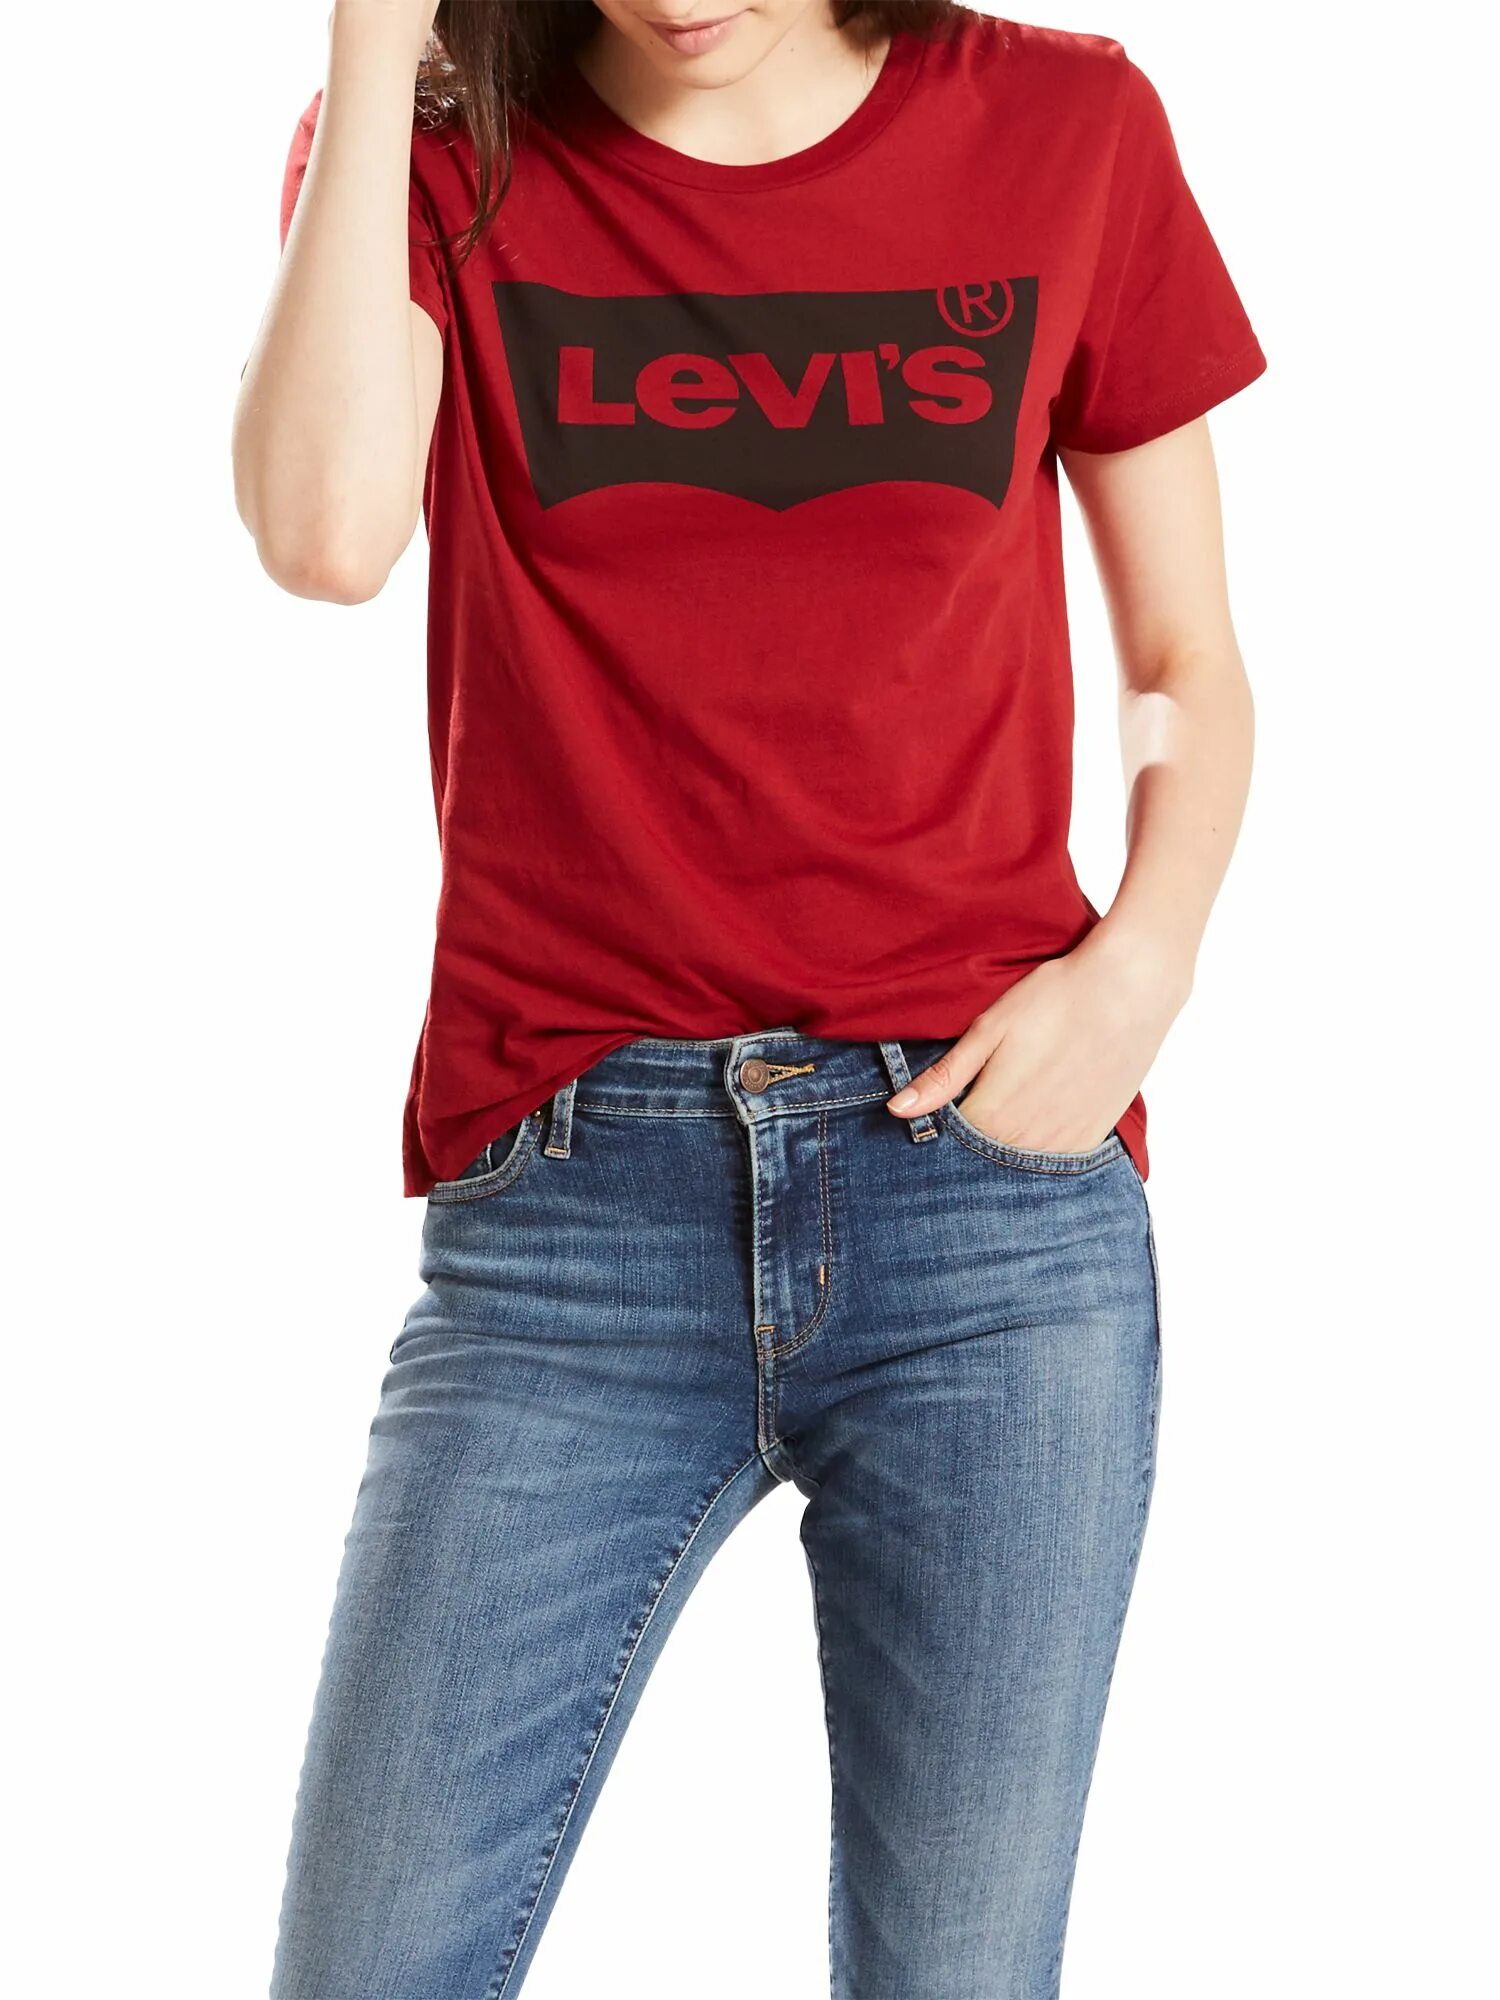 Футболка Левис. Левайс майка майка красная. Levis женская черная футболка Levis. Левайс черная футболка женская.